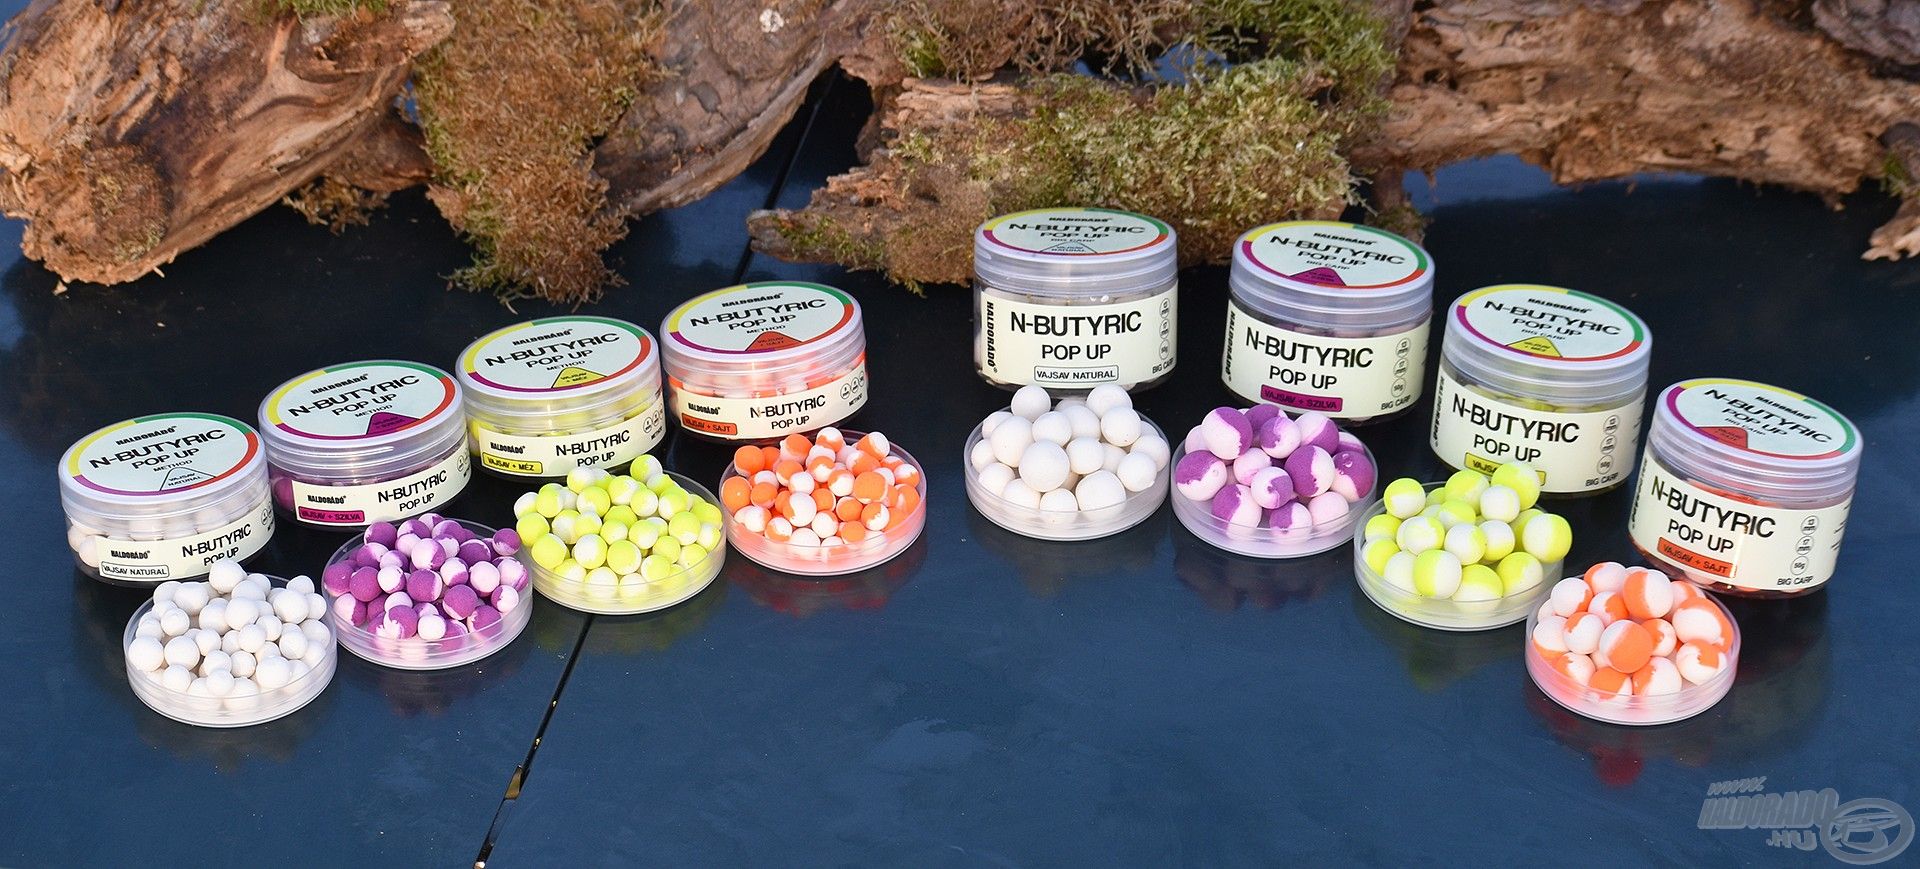 Az N-Butyric csalik kétféle méretben (Method és Big Carp), valamint négyféle ízben, látványos színekben kerülnek forgalomba